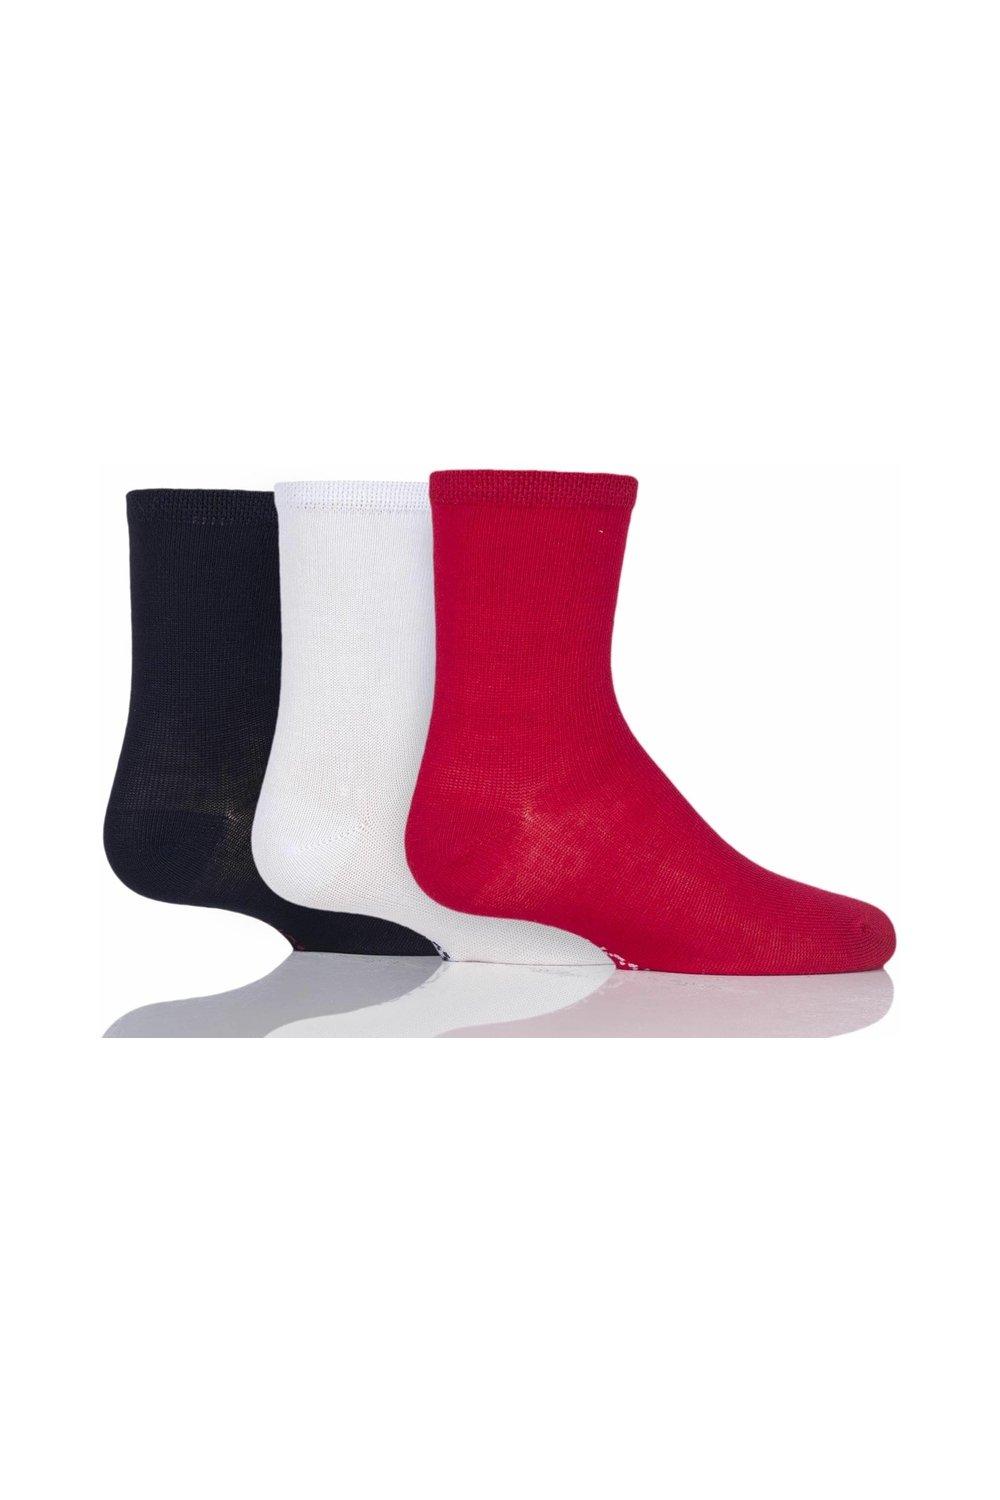 цена Комплект из 3 пар однотонных бамбуковых носков в полоску с гладкими швами на пальцах ног SOCKSHOP, красный